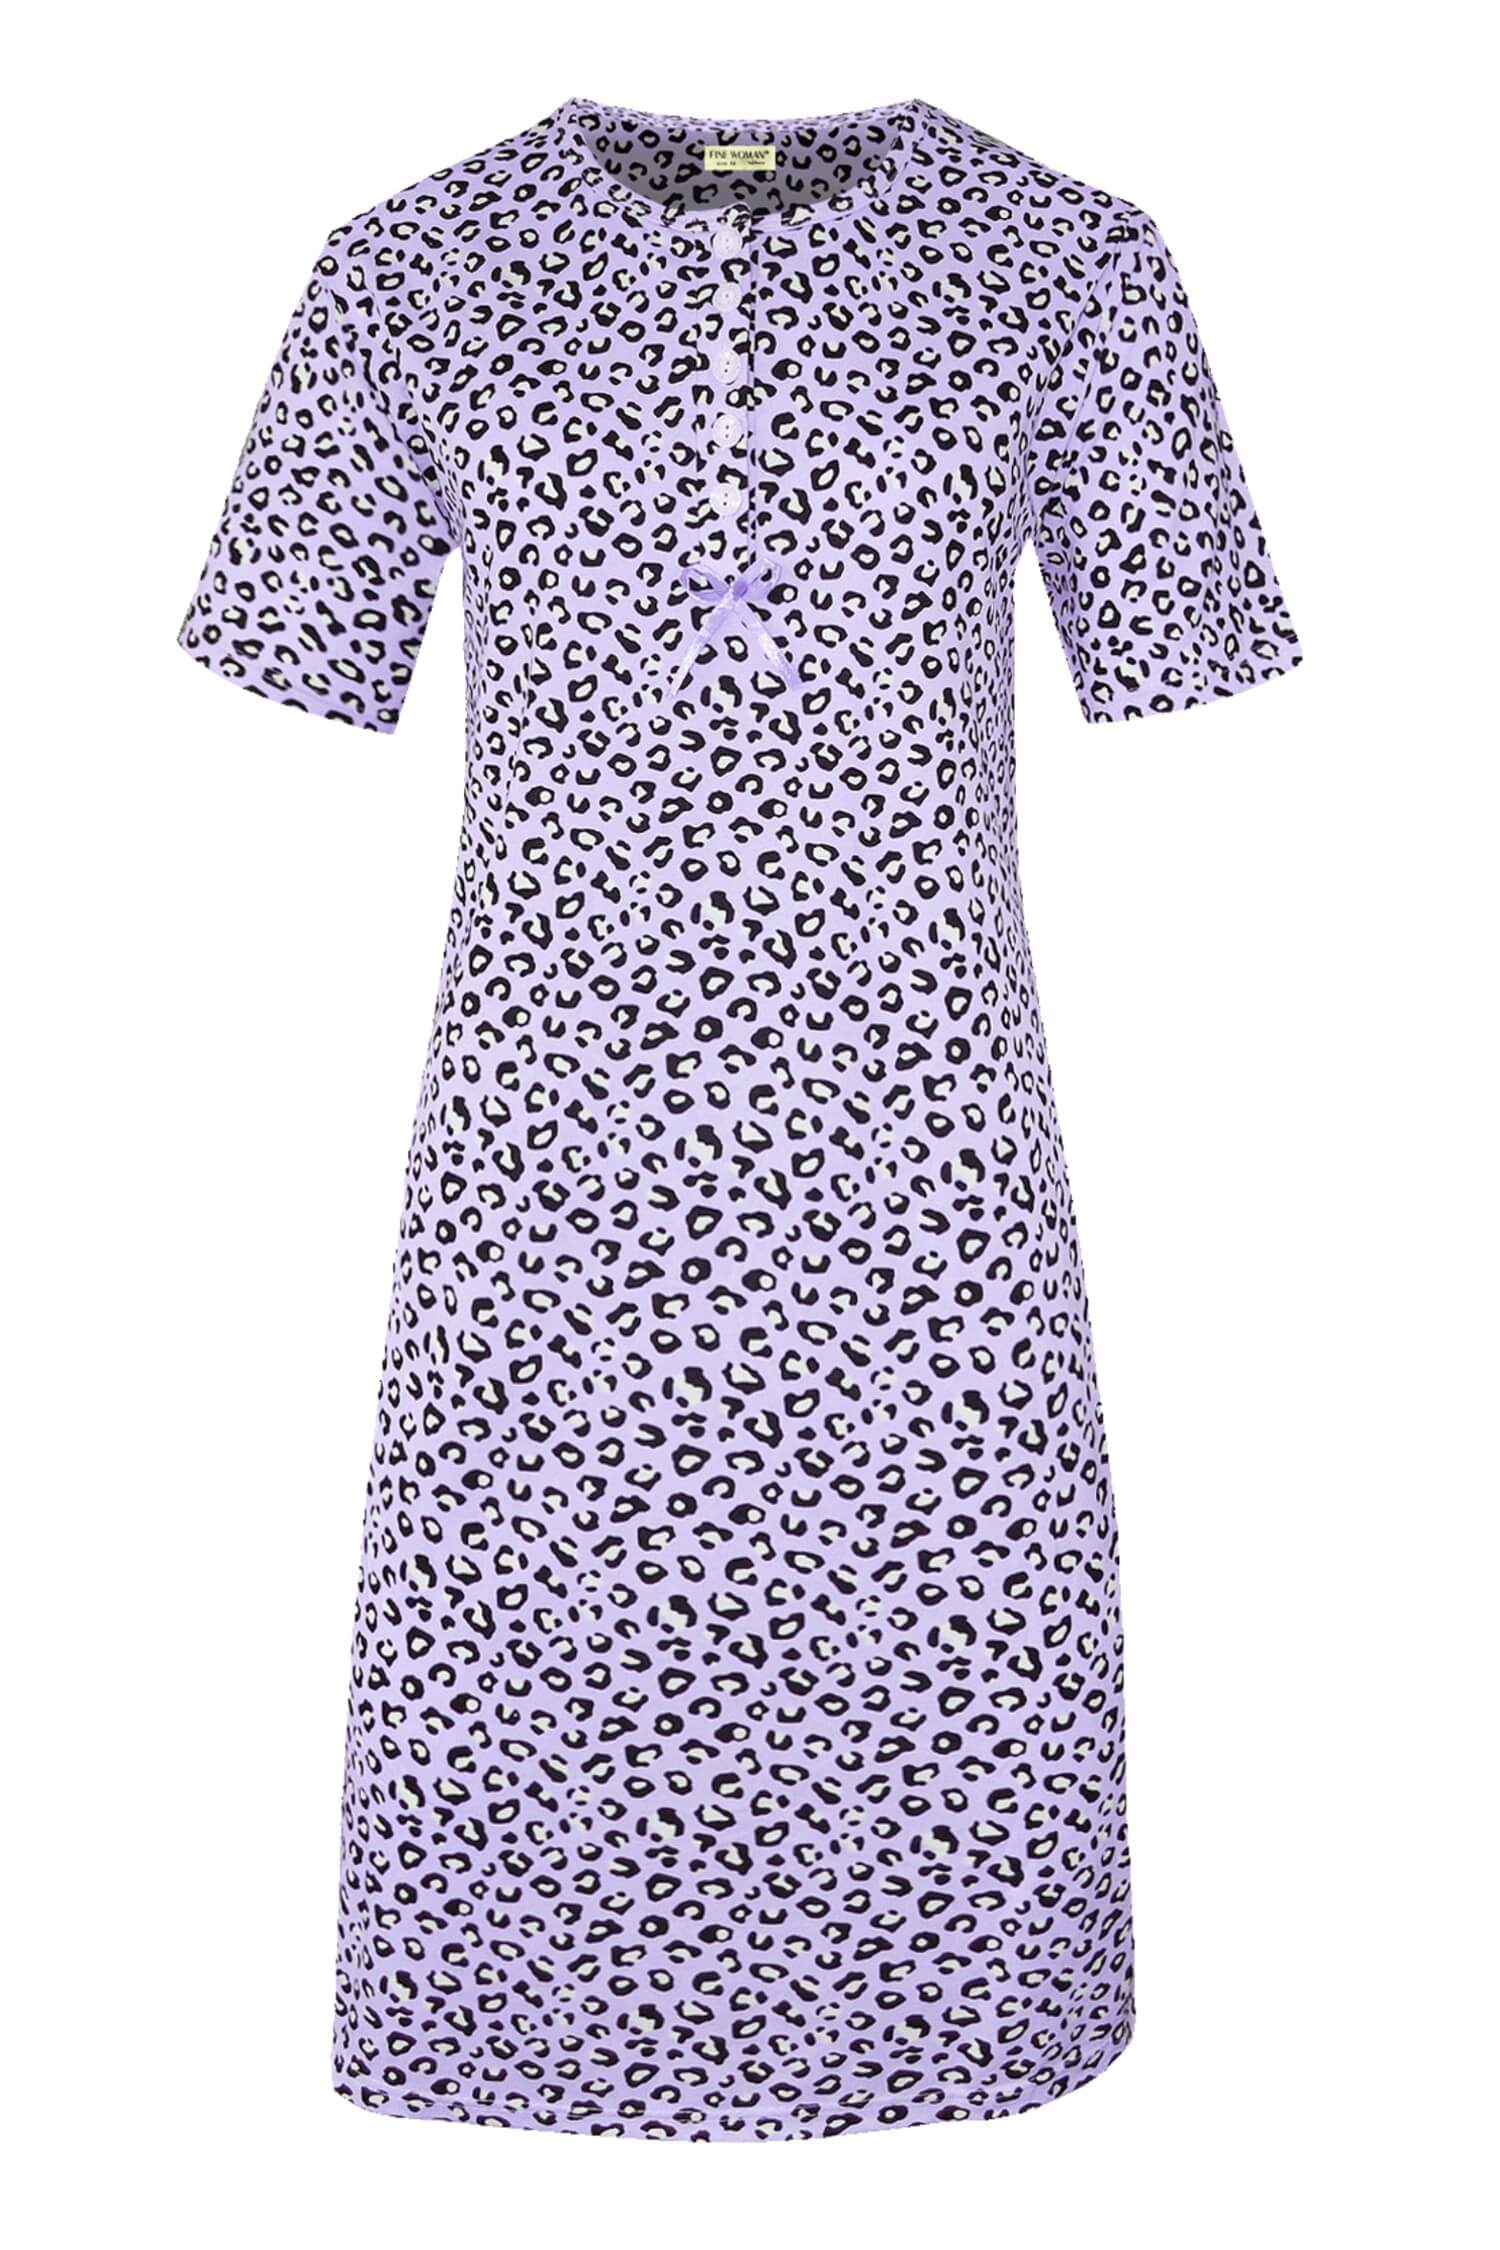 Katarina dámská noční košile leopardí vzor 6529 XL světle fialová